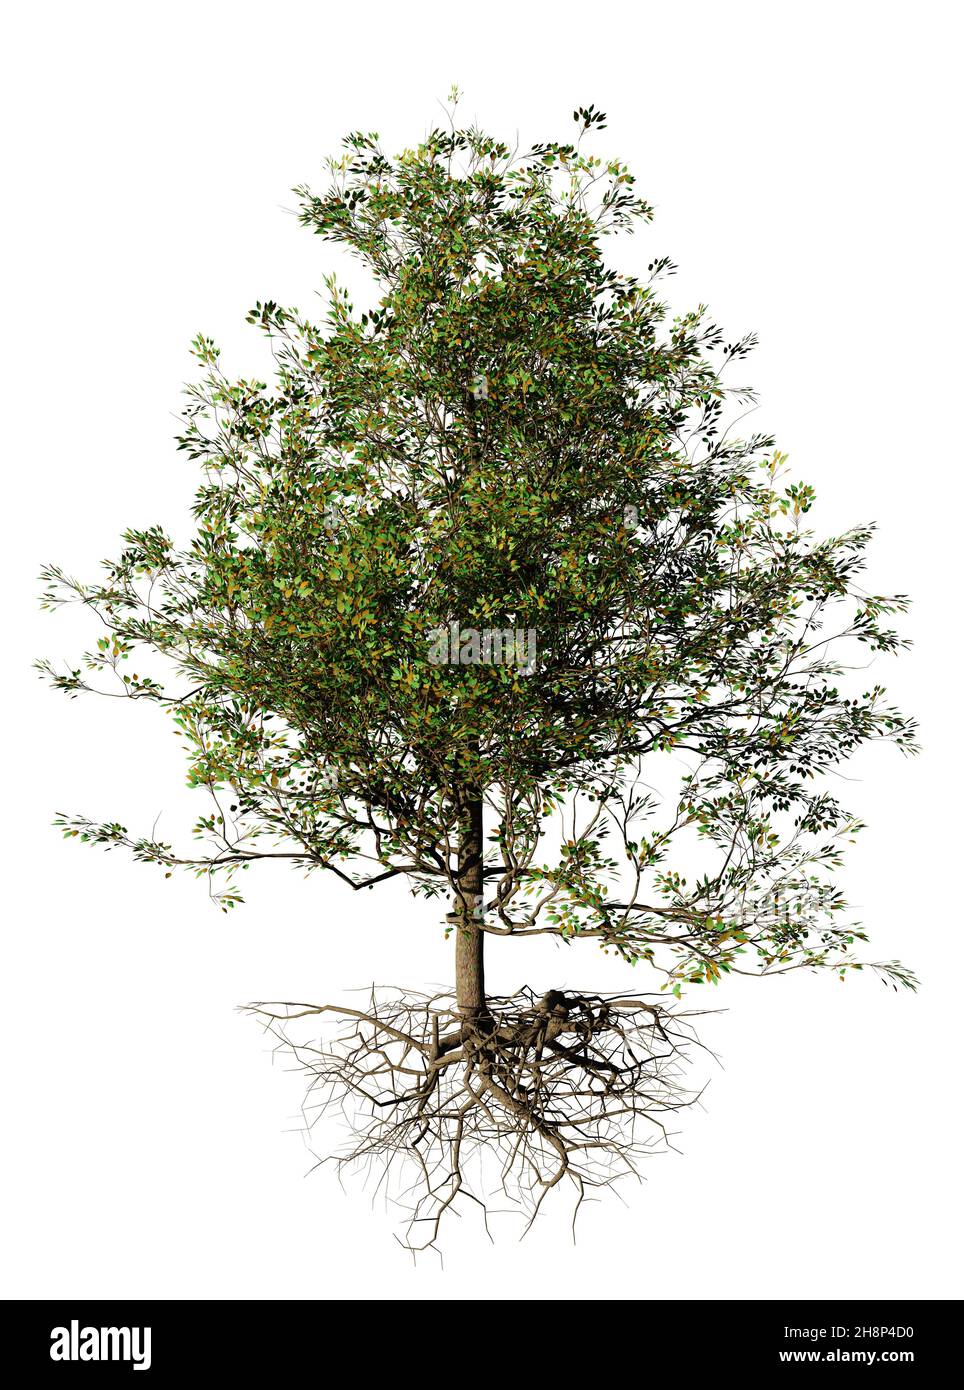 albero cespuglioso con radici, isolato su sfondo bianco Foto Stock